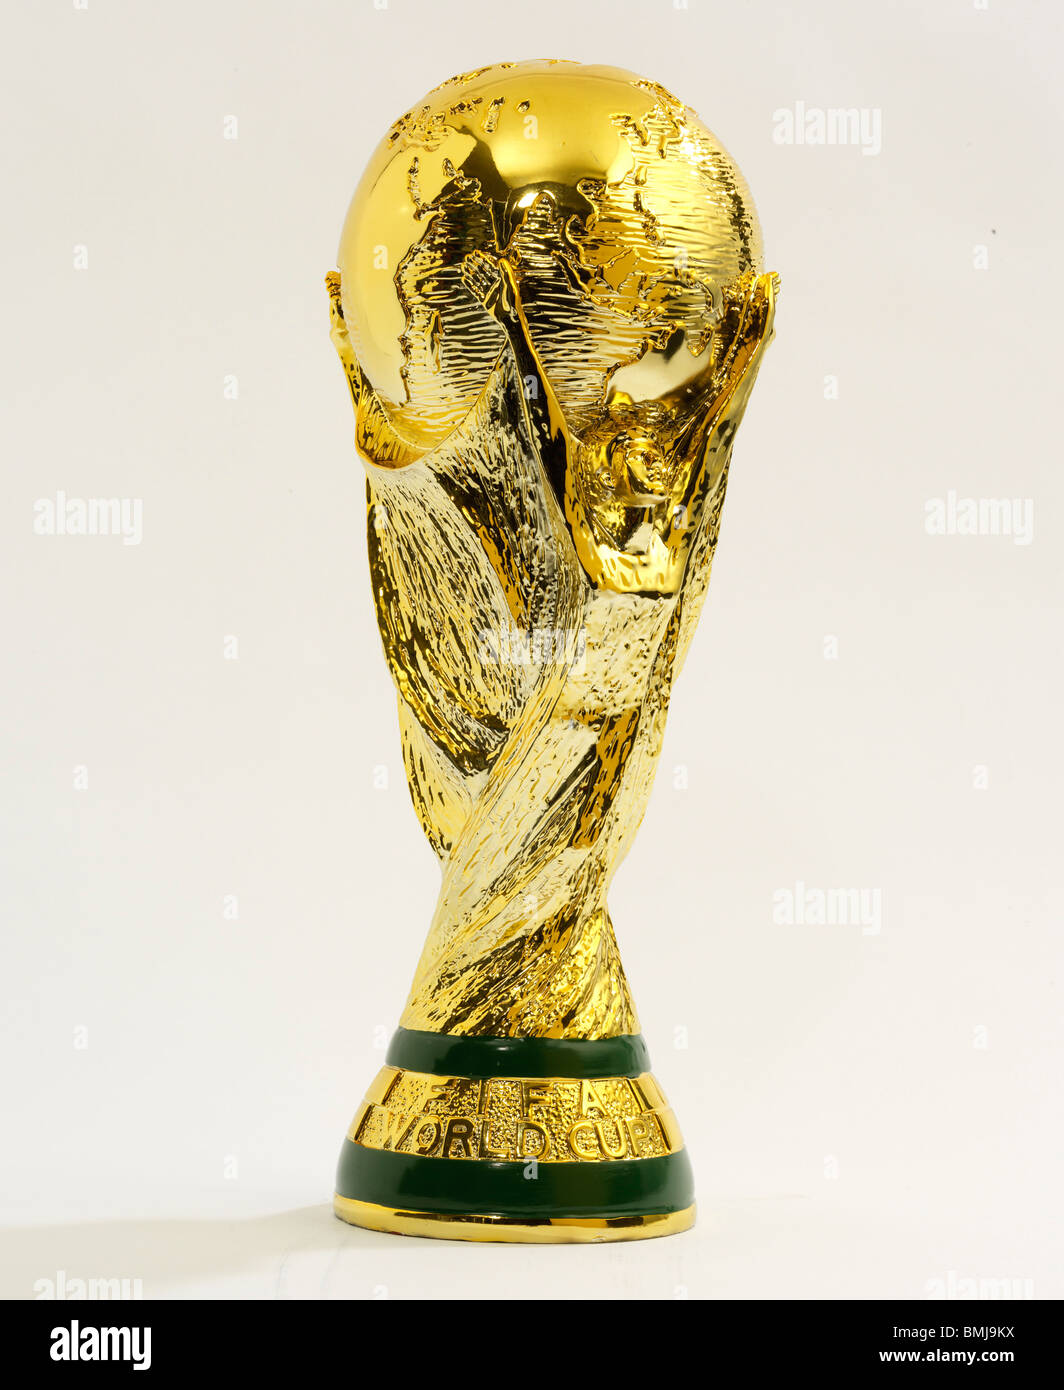 Estuche Louis Vuitton Copa FIFA Mundial 2014 03 - Marca de Gol